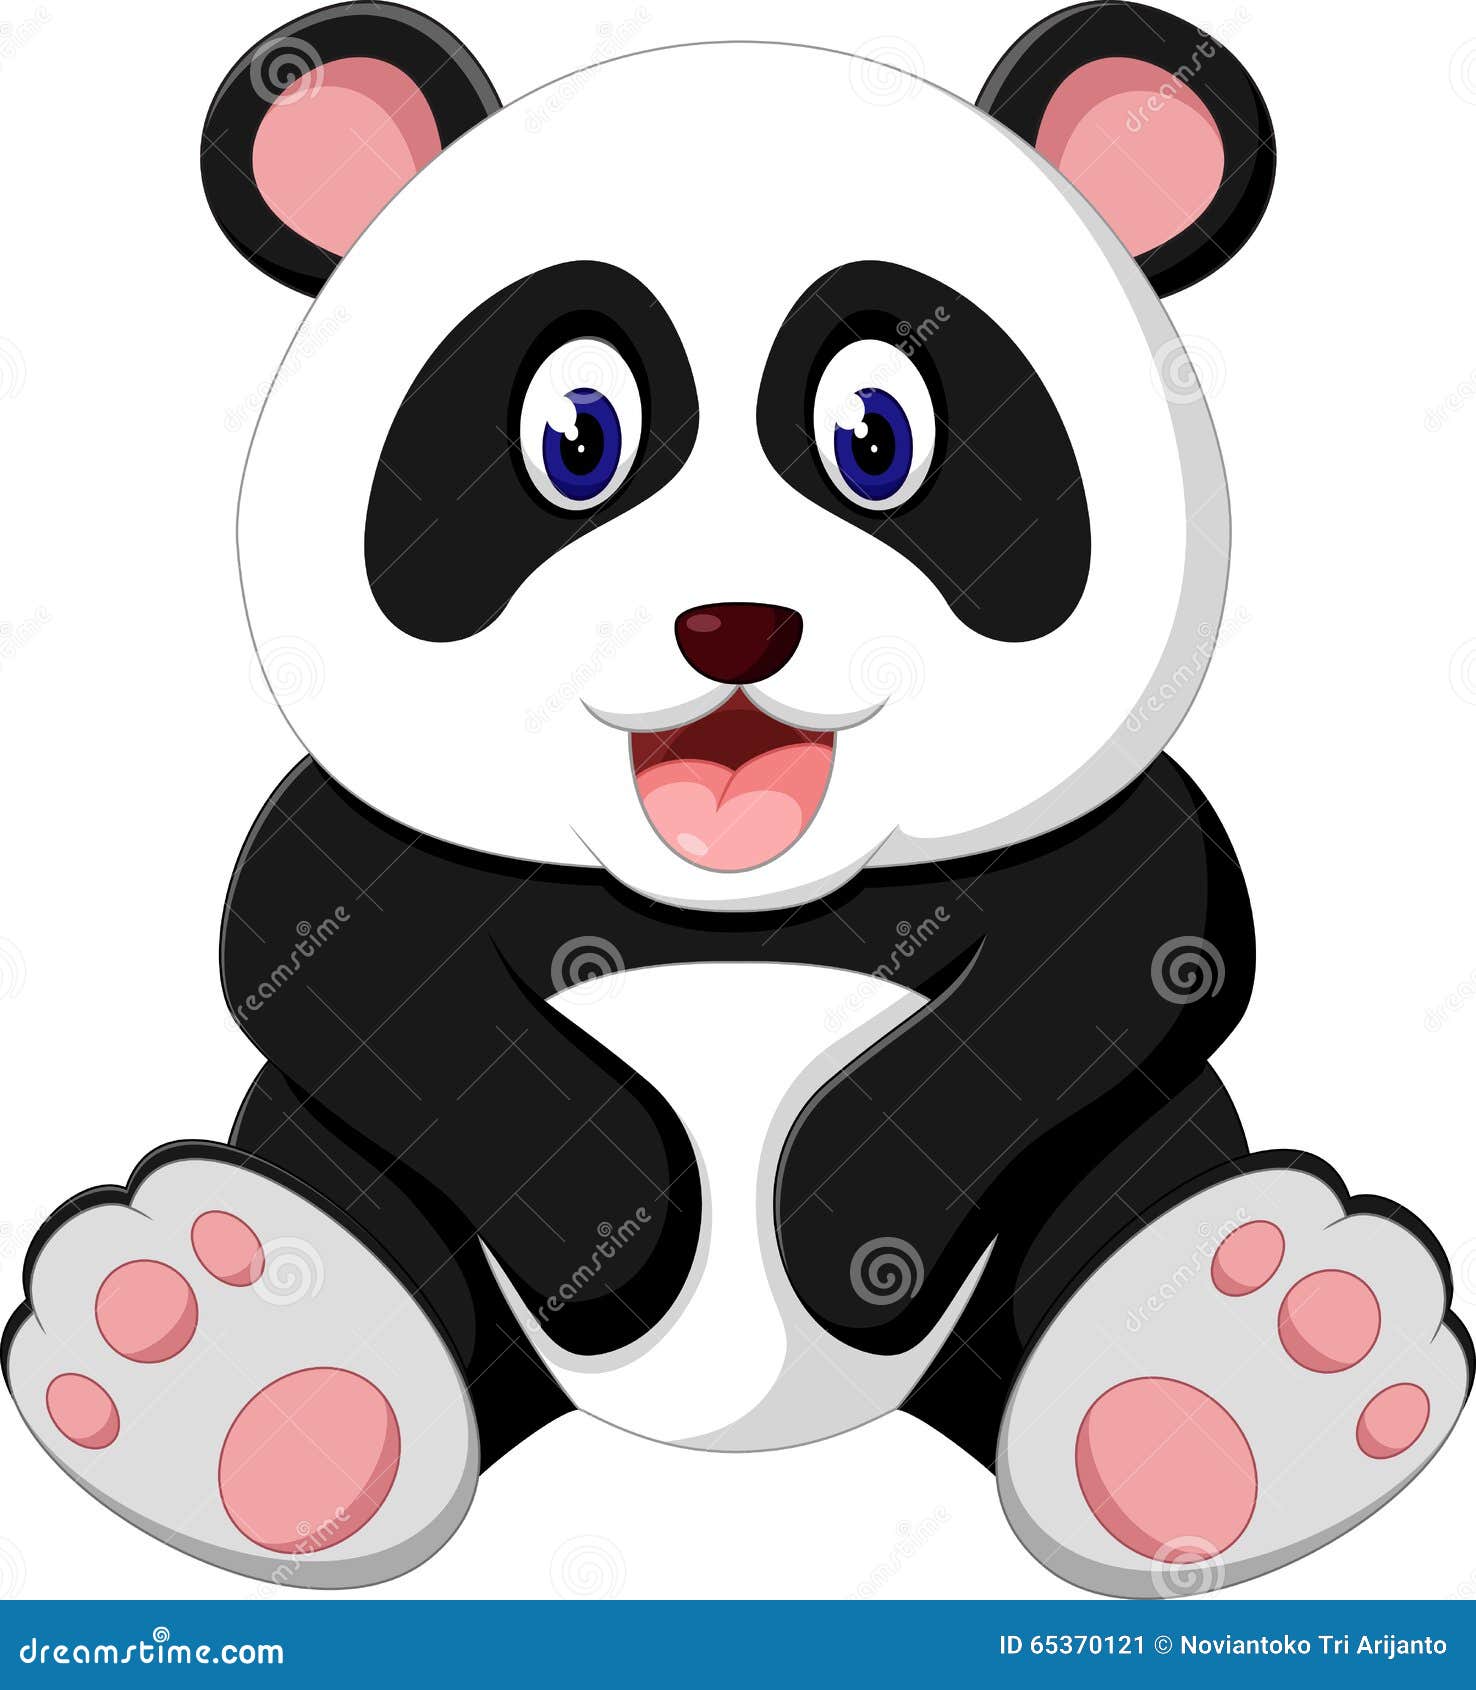 Cute Panda Cartoon Vector | CartoonDealer.com #79080857